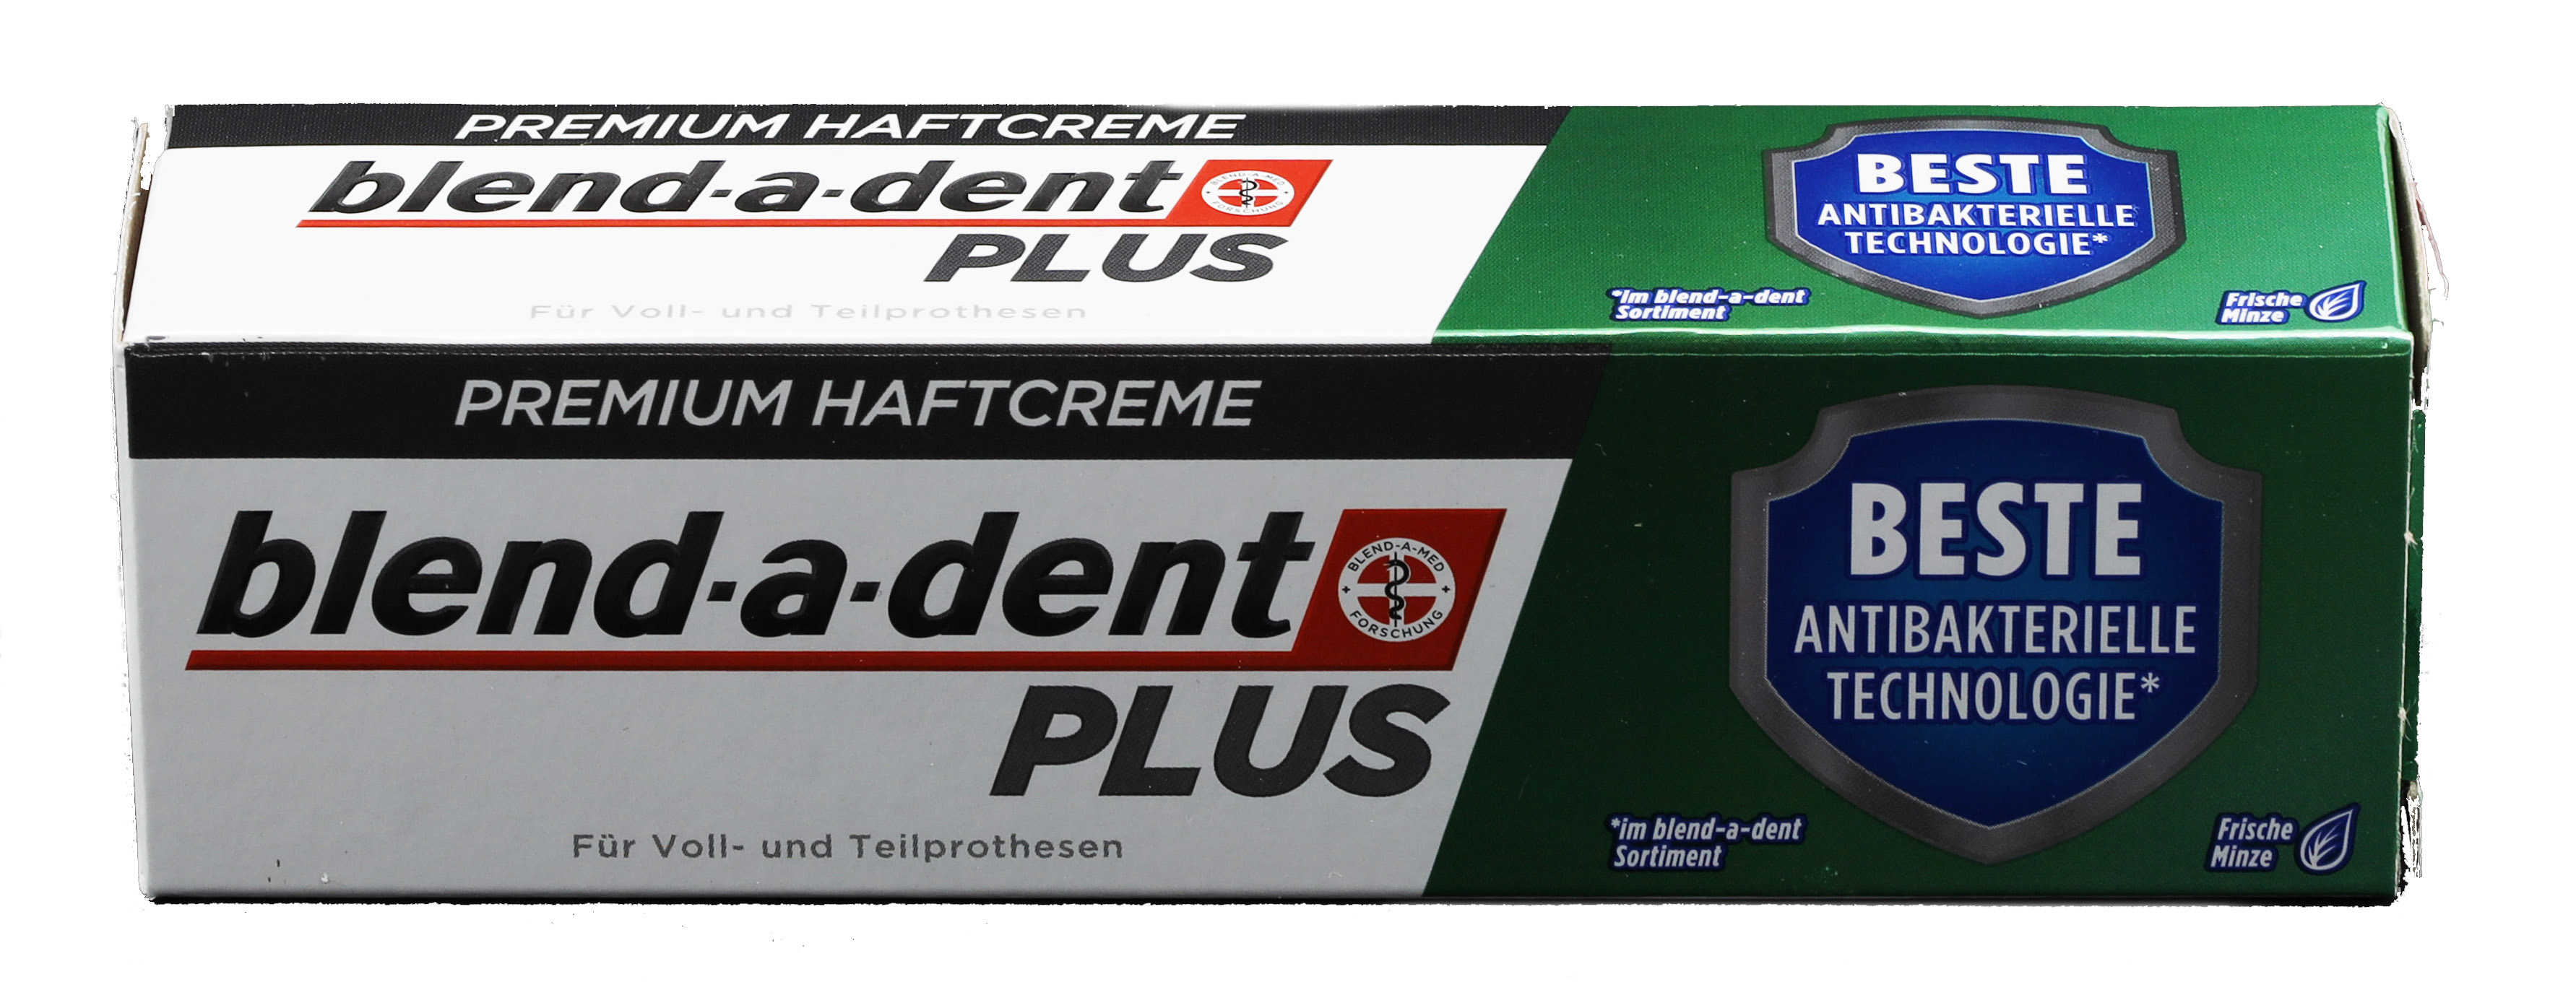 blend-a-dent Premium Haftcreme Plus, 40 g